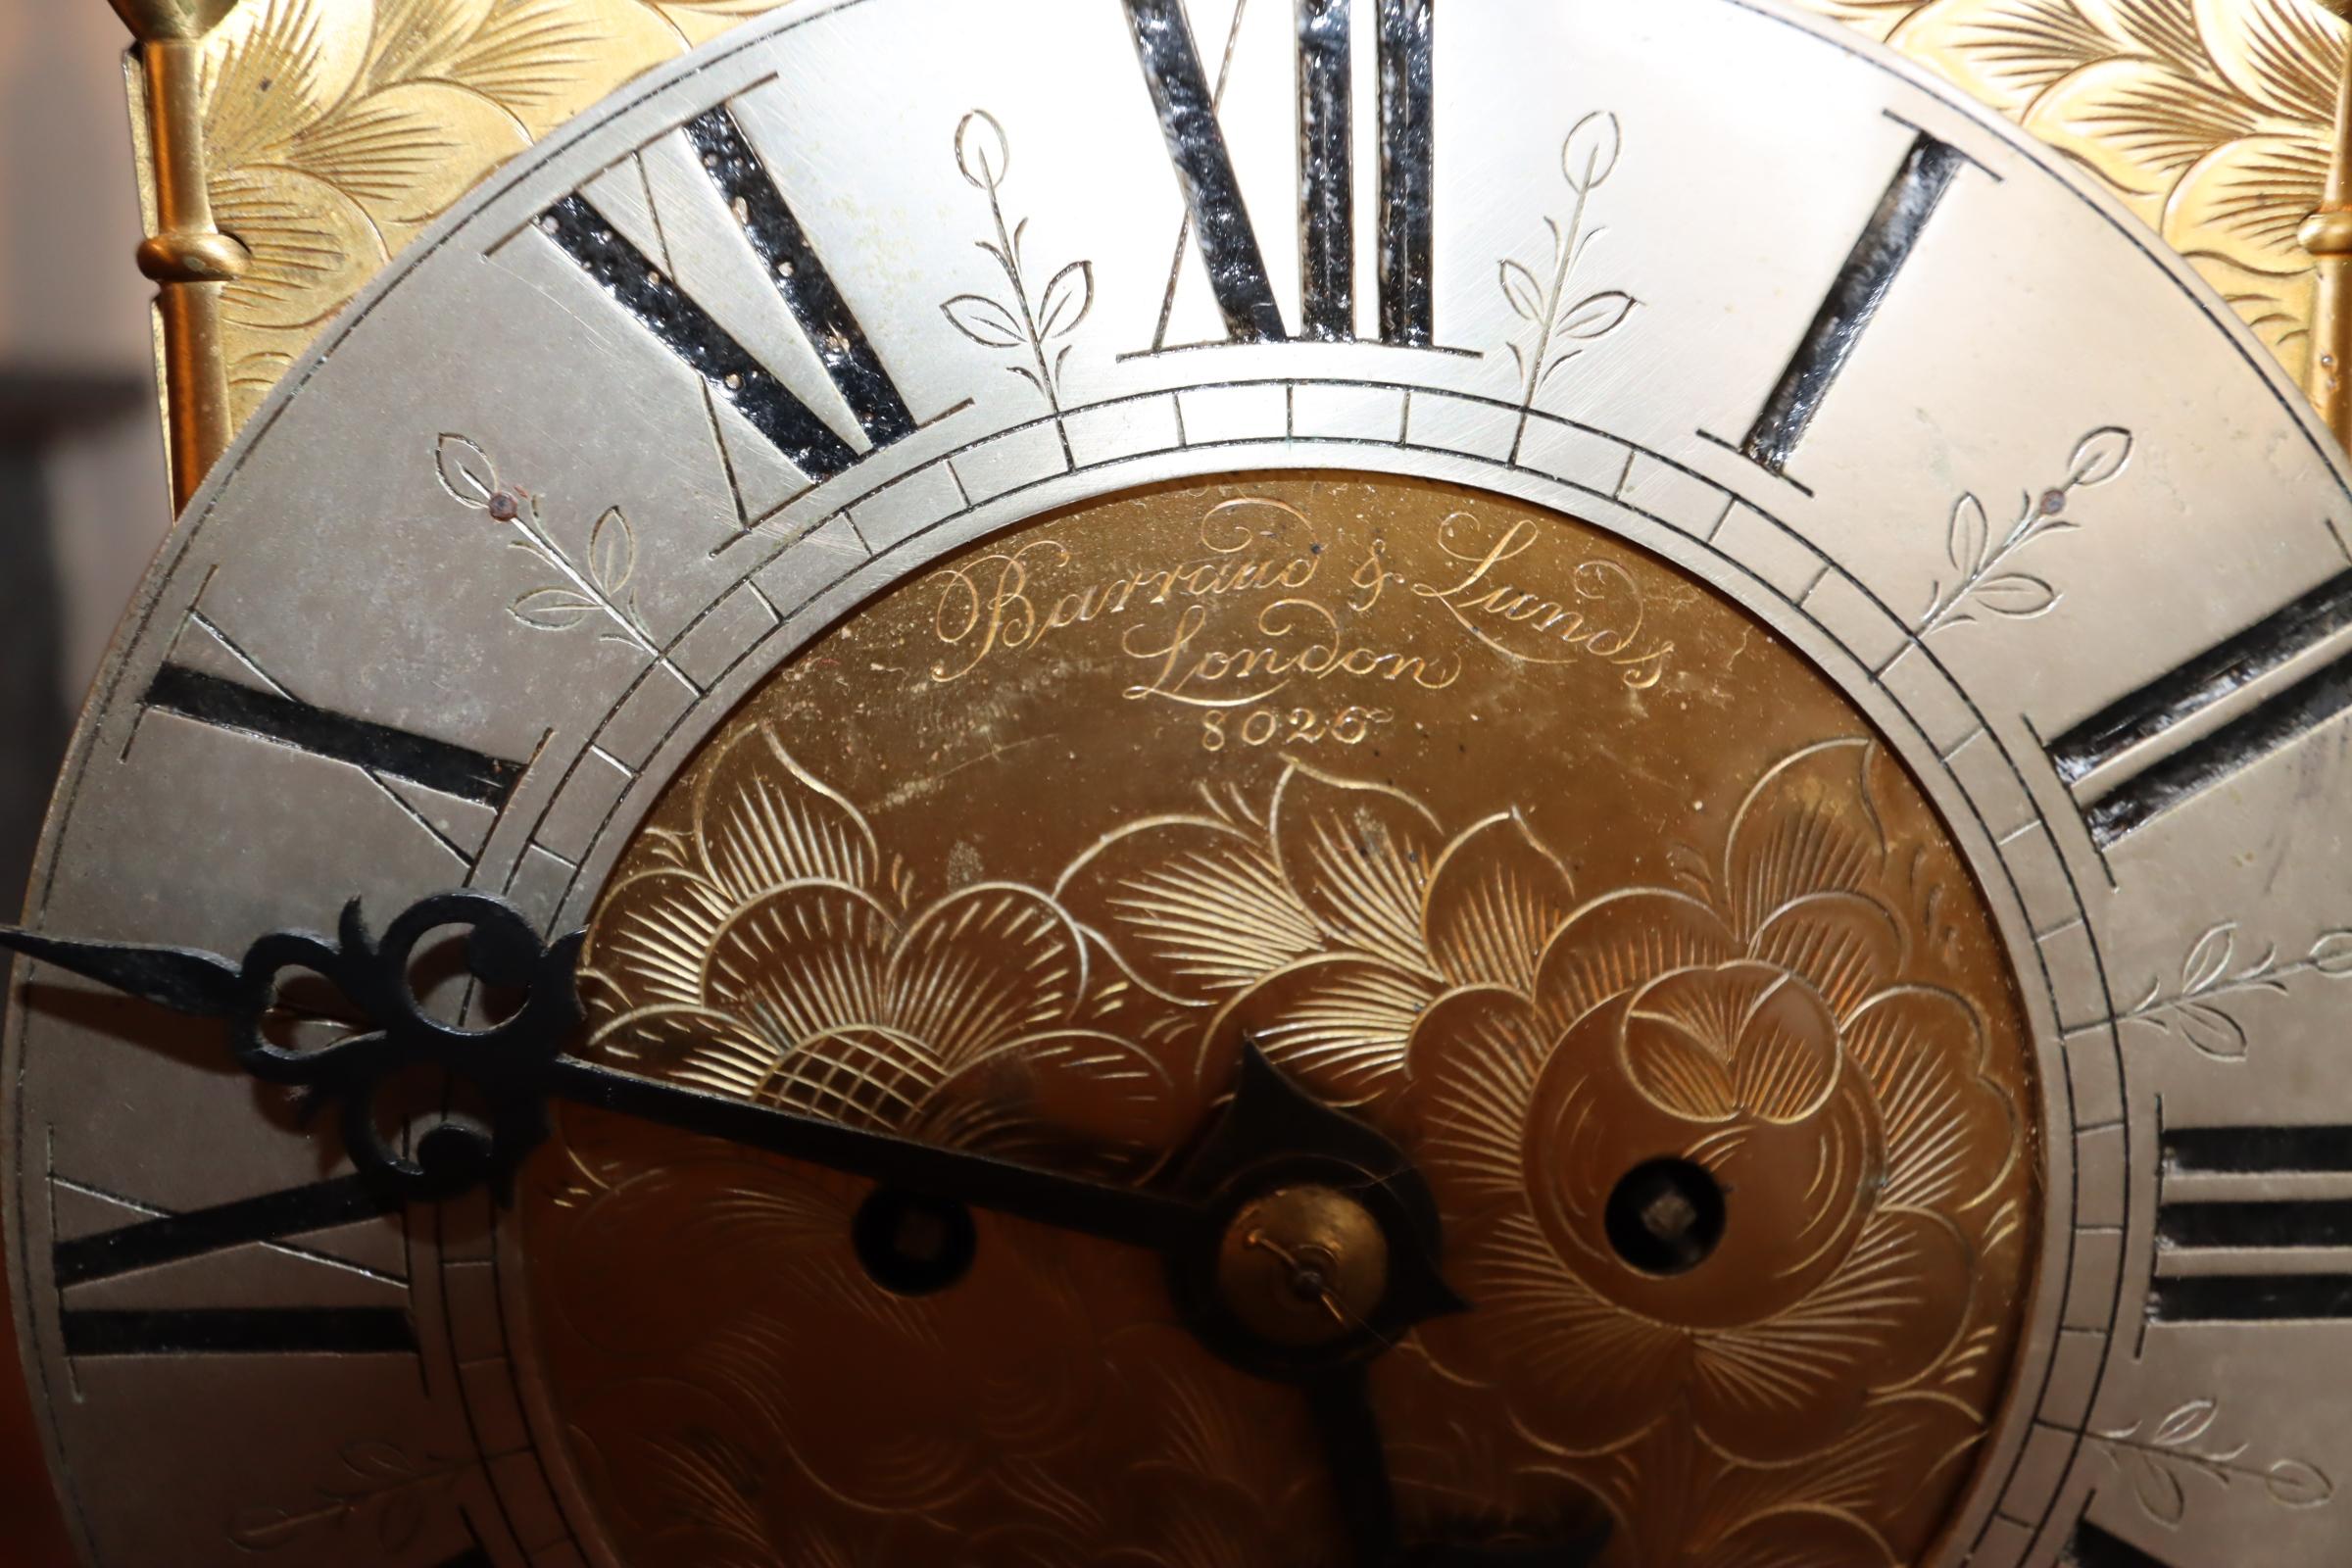 Une exquise horloge-lanterne en laiton du XVIIIe siècle, une fusion magistrale d'élégance et de fonctionnalité. Fabriqué en laiton brillant, ce garde-temps présente des panneaux ajourés complexes qui ornent son cadre en forme de lanterne, permettant